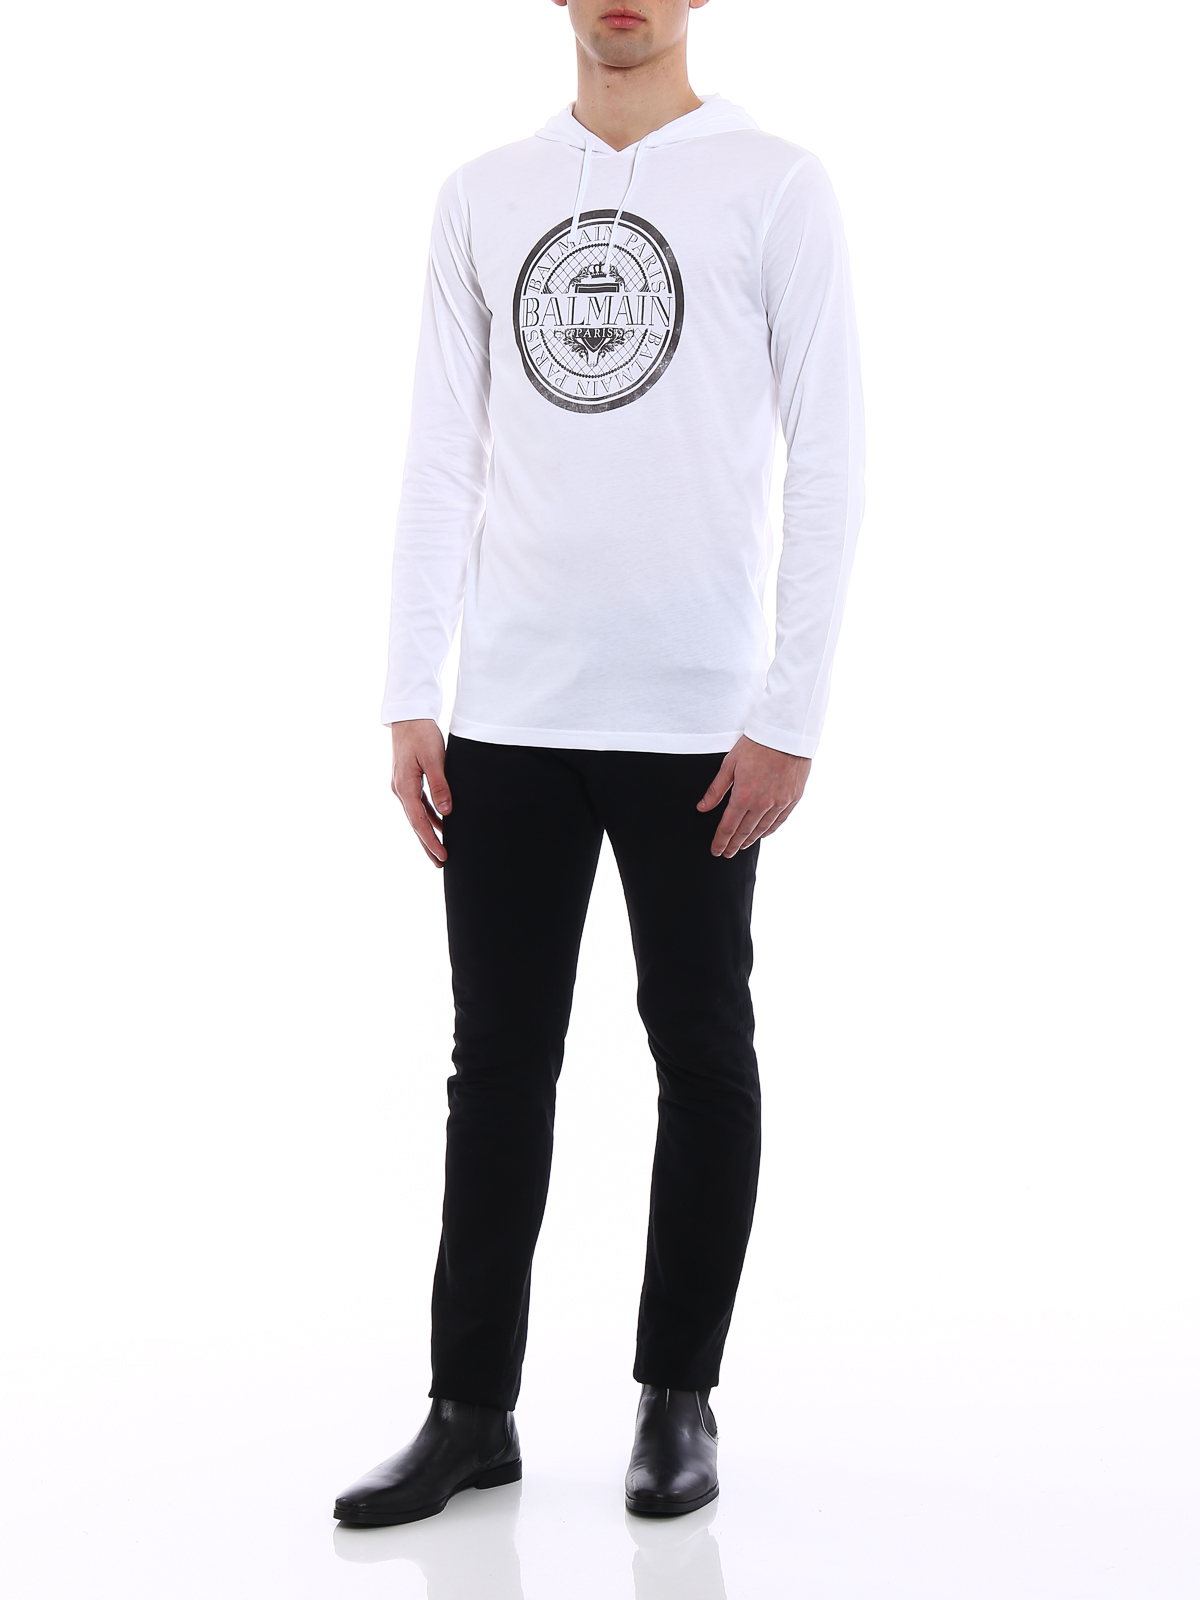 vælge Appel til at være attraktiv Punktlighed T-shirts Balmain - Long sleeve logo T-shirt - S8H8099I161100 | iKRIX.com